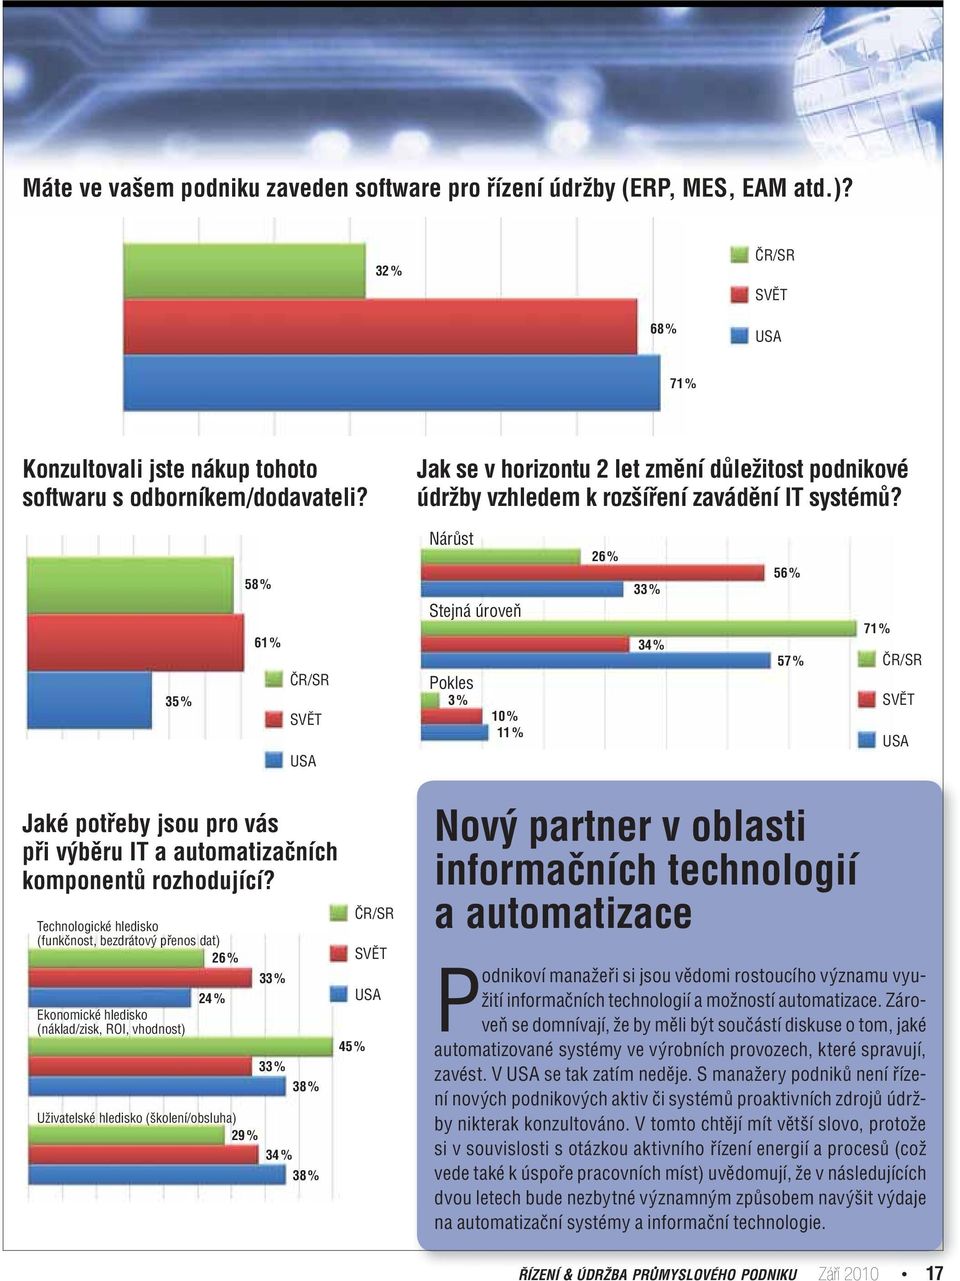 35 % 58 % 61 % ČR/SR SVĚT USA Nárůst Stejná úroveň Pokles 3 % 10 % 11 % 26 % 33 % 34 % 56 % 57 % 71 % ČR/SR SVĚT USA Jaké potřeby jsou pro vás při výběru IT a automatizačních komponentů rozhodující?